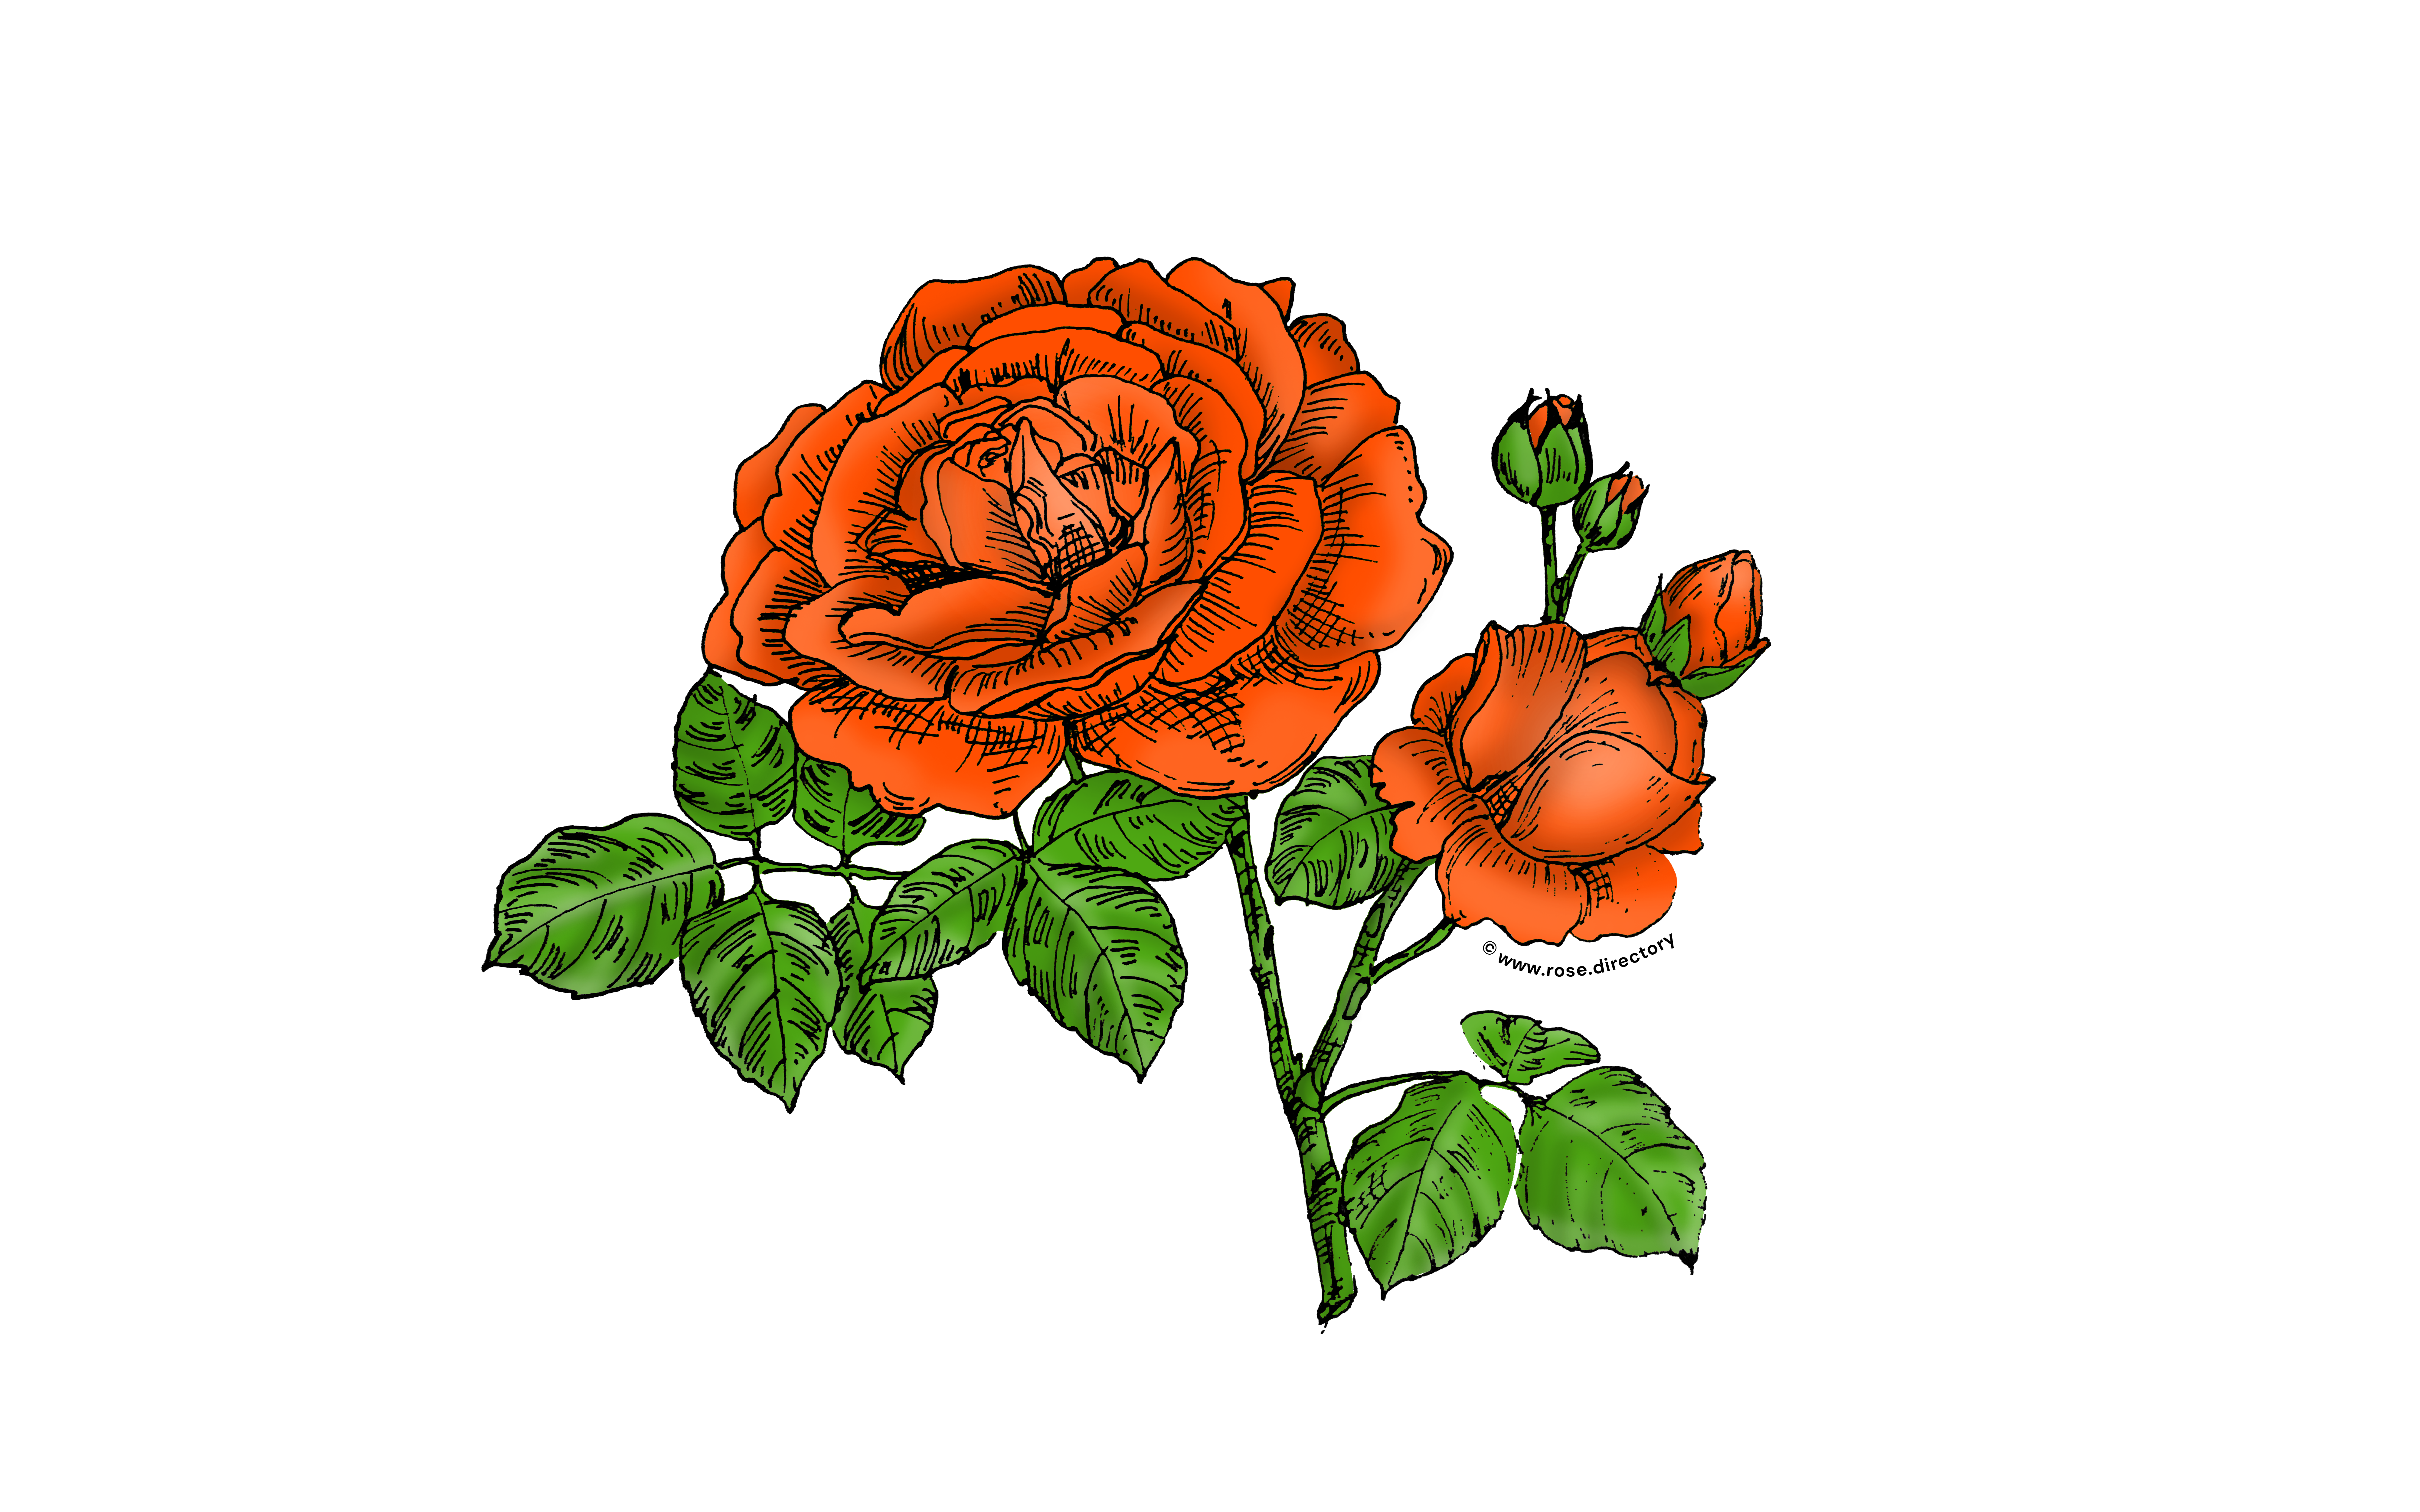 Orange Globular Rose Bloom Full 26-40 Petals In 3+ Rows